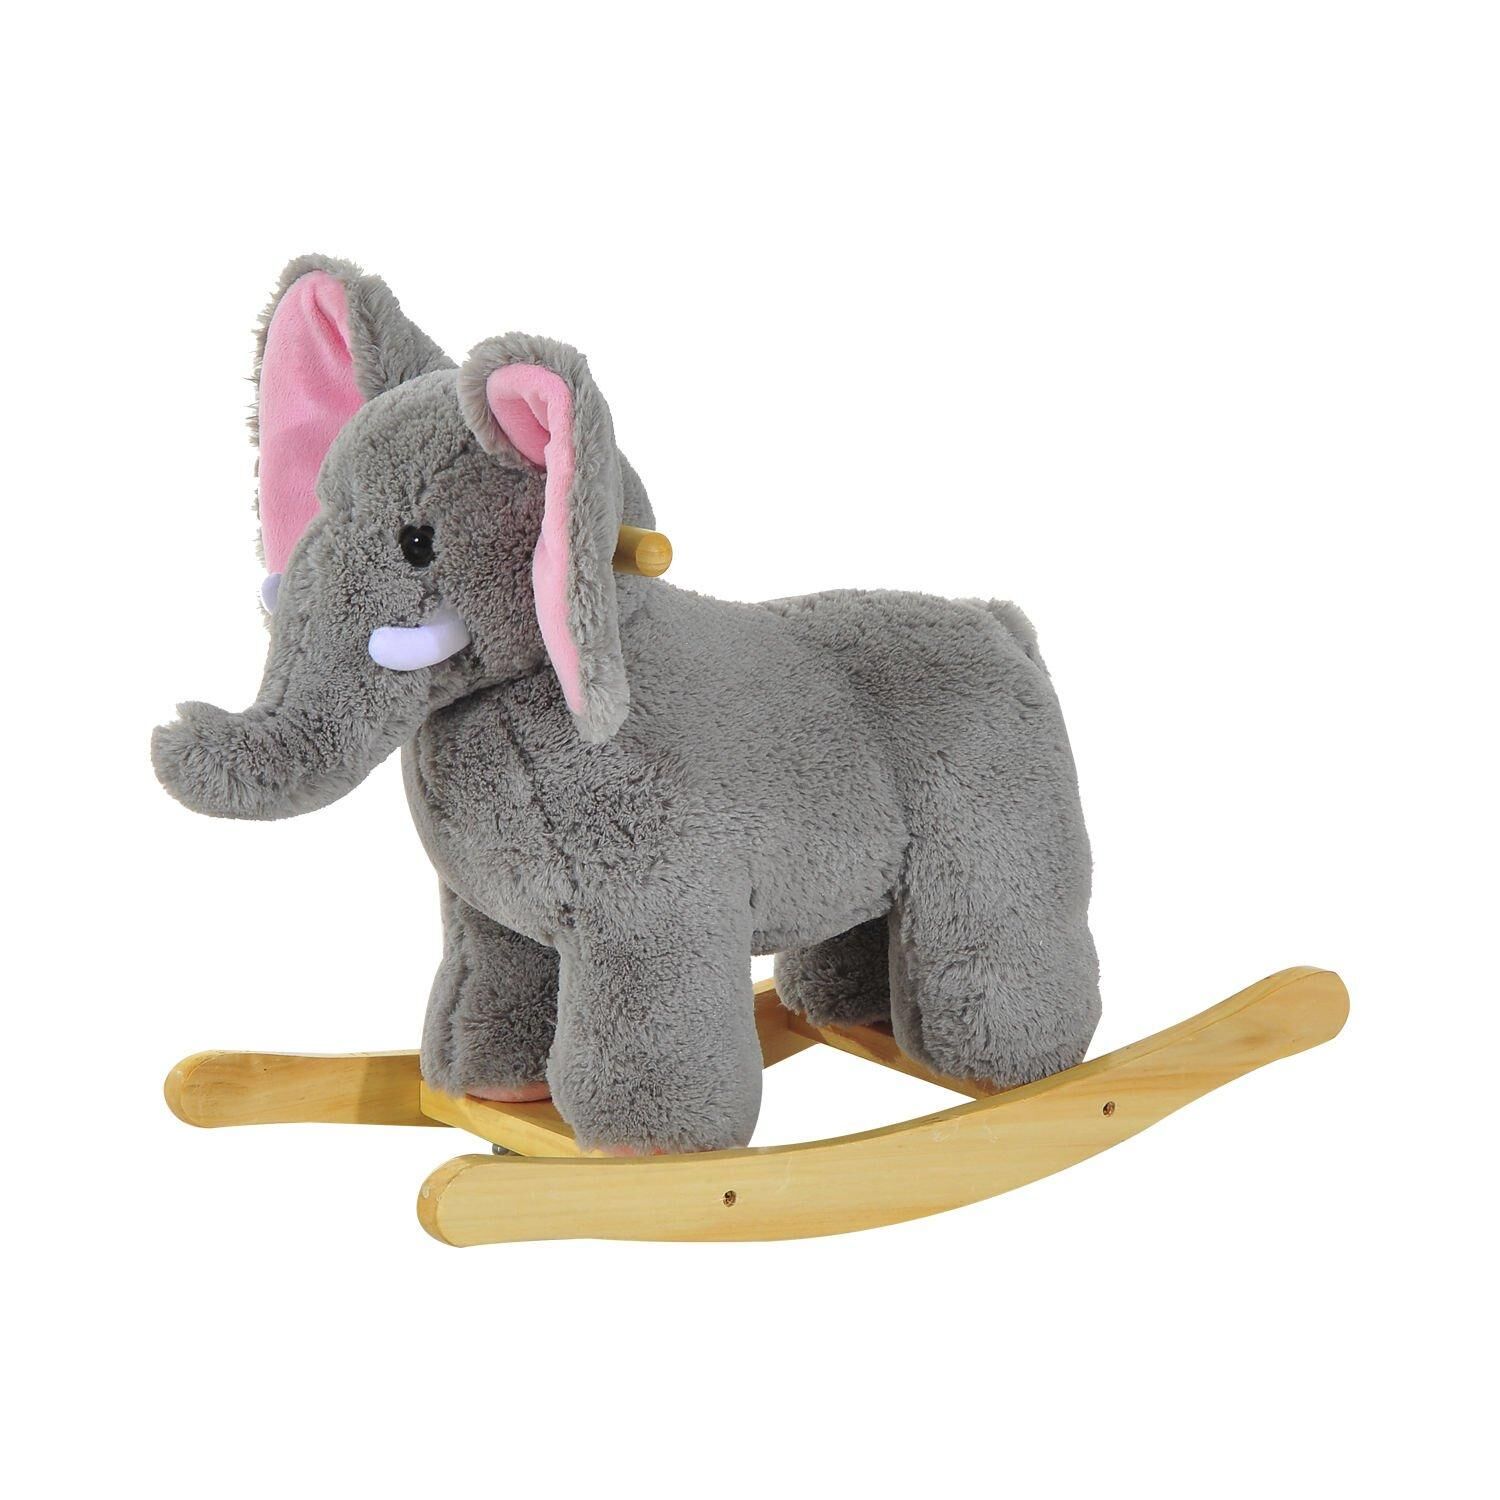 HOMCOM Baby Kids Plush Toy Rocking Horse Elephant Sheep Style Ride on Rocker